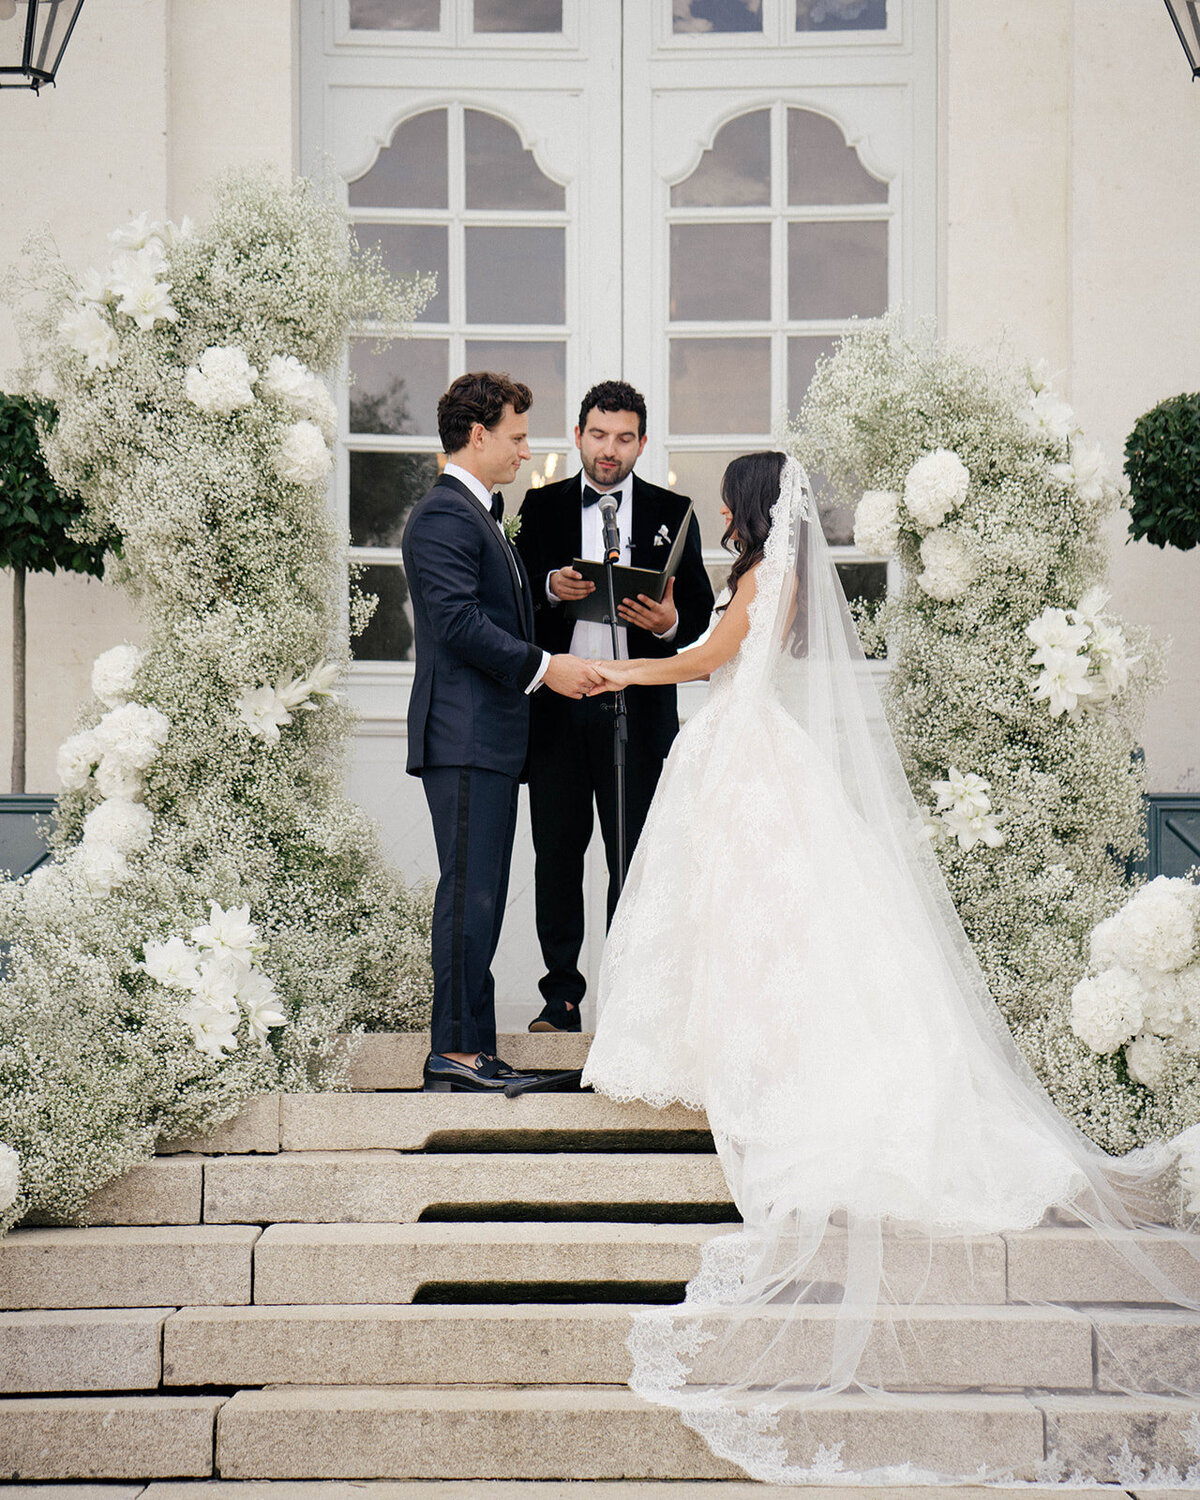 Chateau-du-grand-luce-wedding8